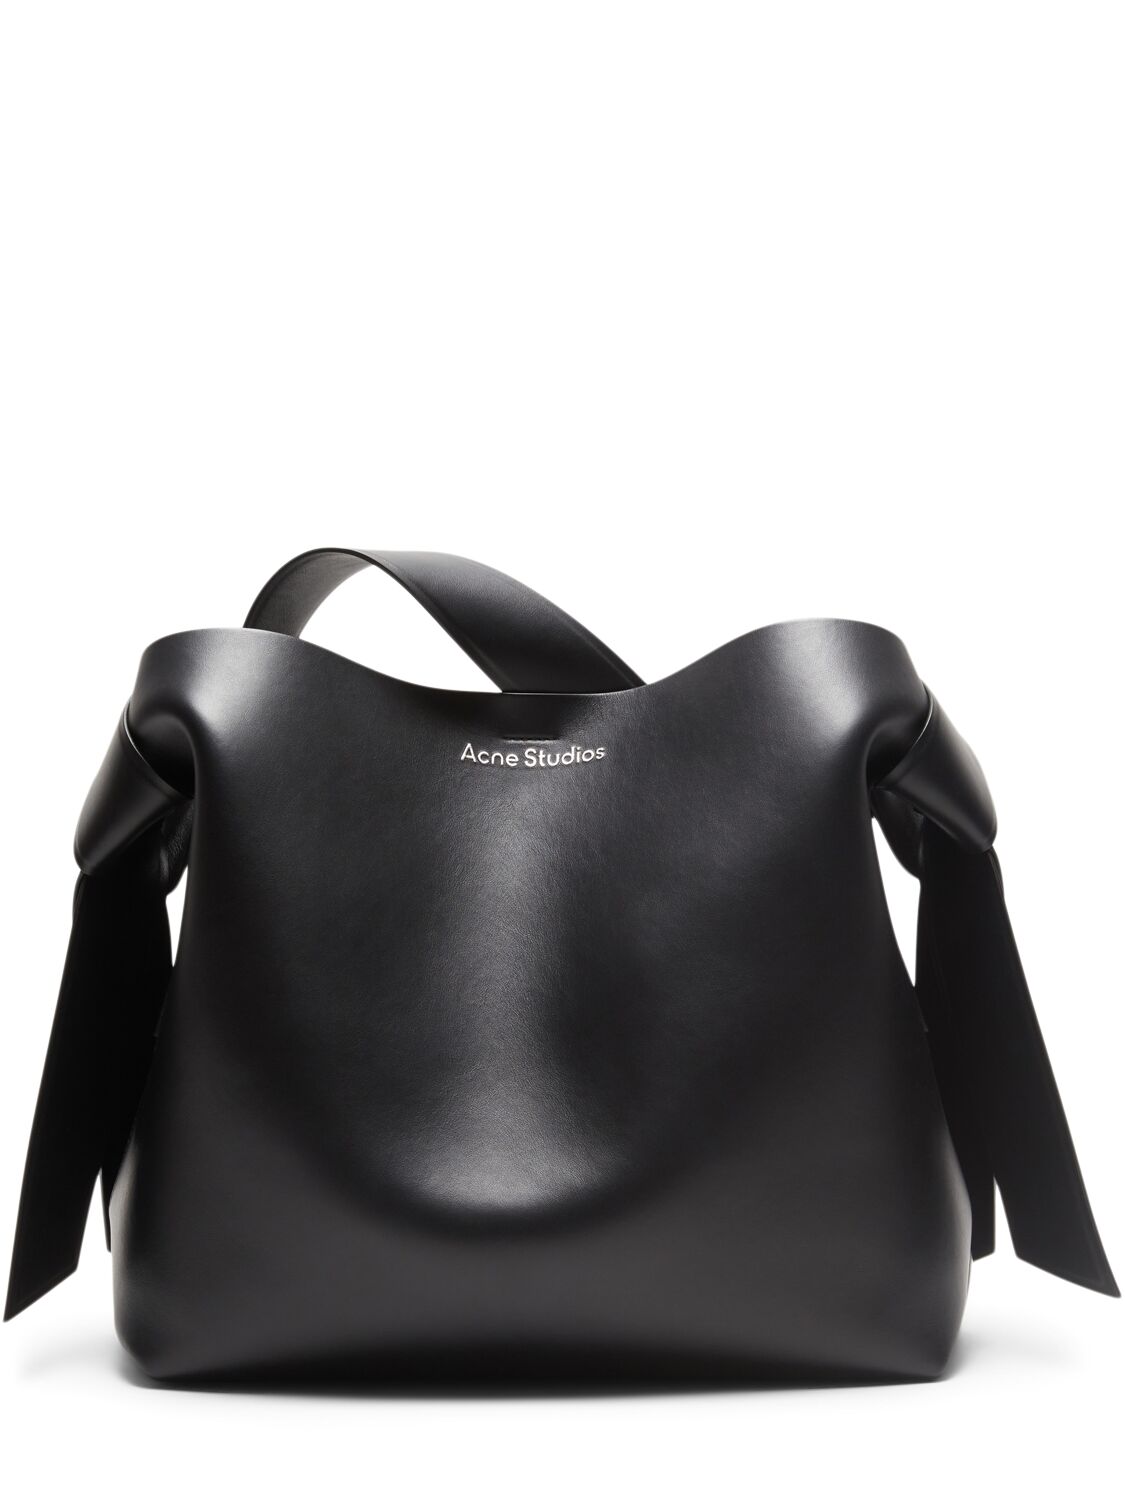 Acne Studios Midi Musubi Leather Tote Bag In Black